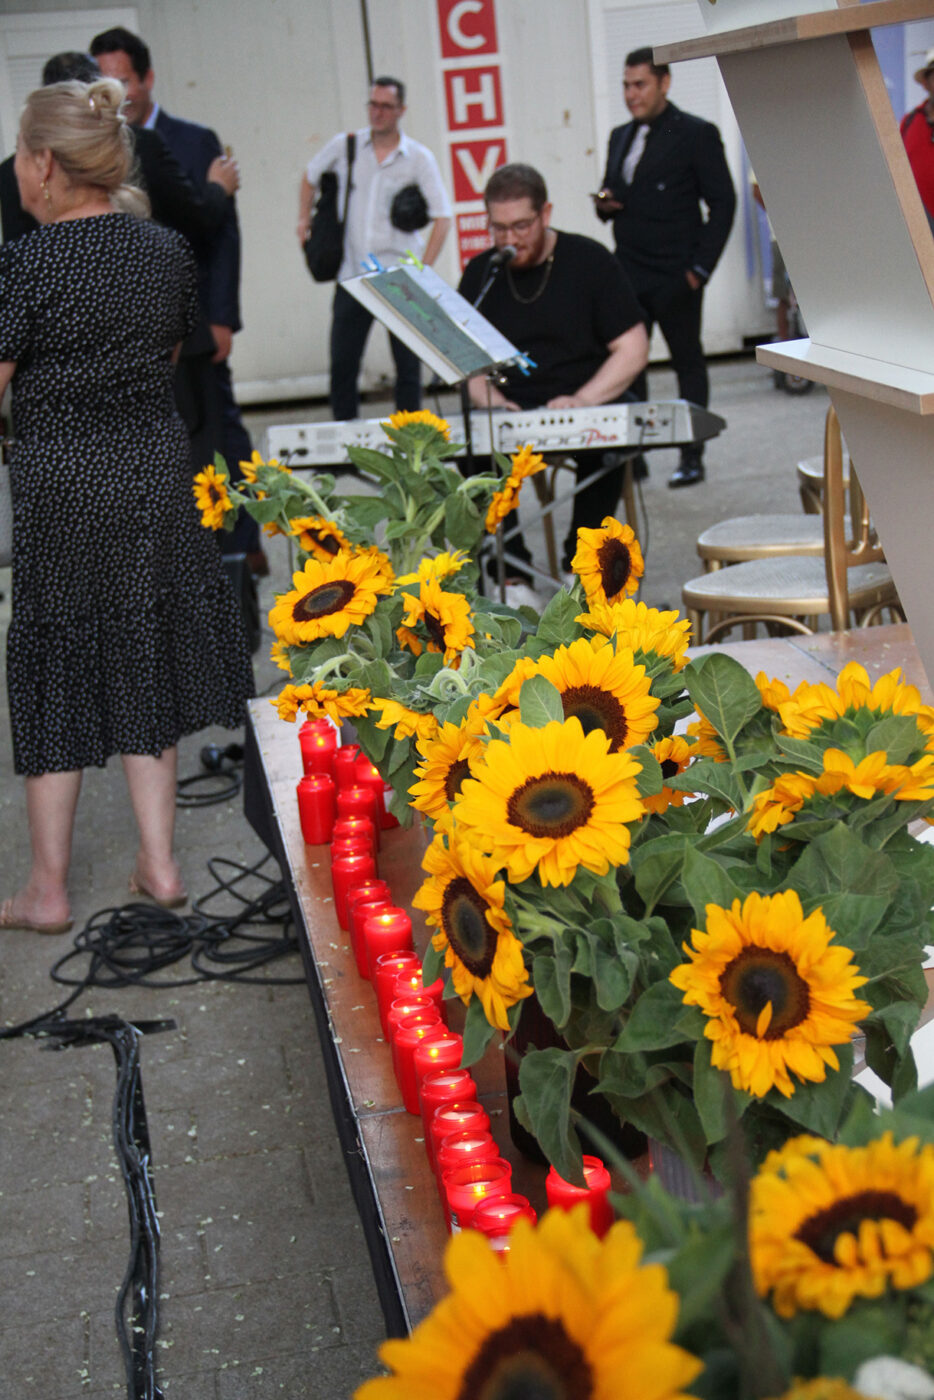 Sonnenblumen gehören unerlässlich zu dieser Veranstaltung - ihnen hatte Ceija Stojka ein Gedicht gewidmet